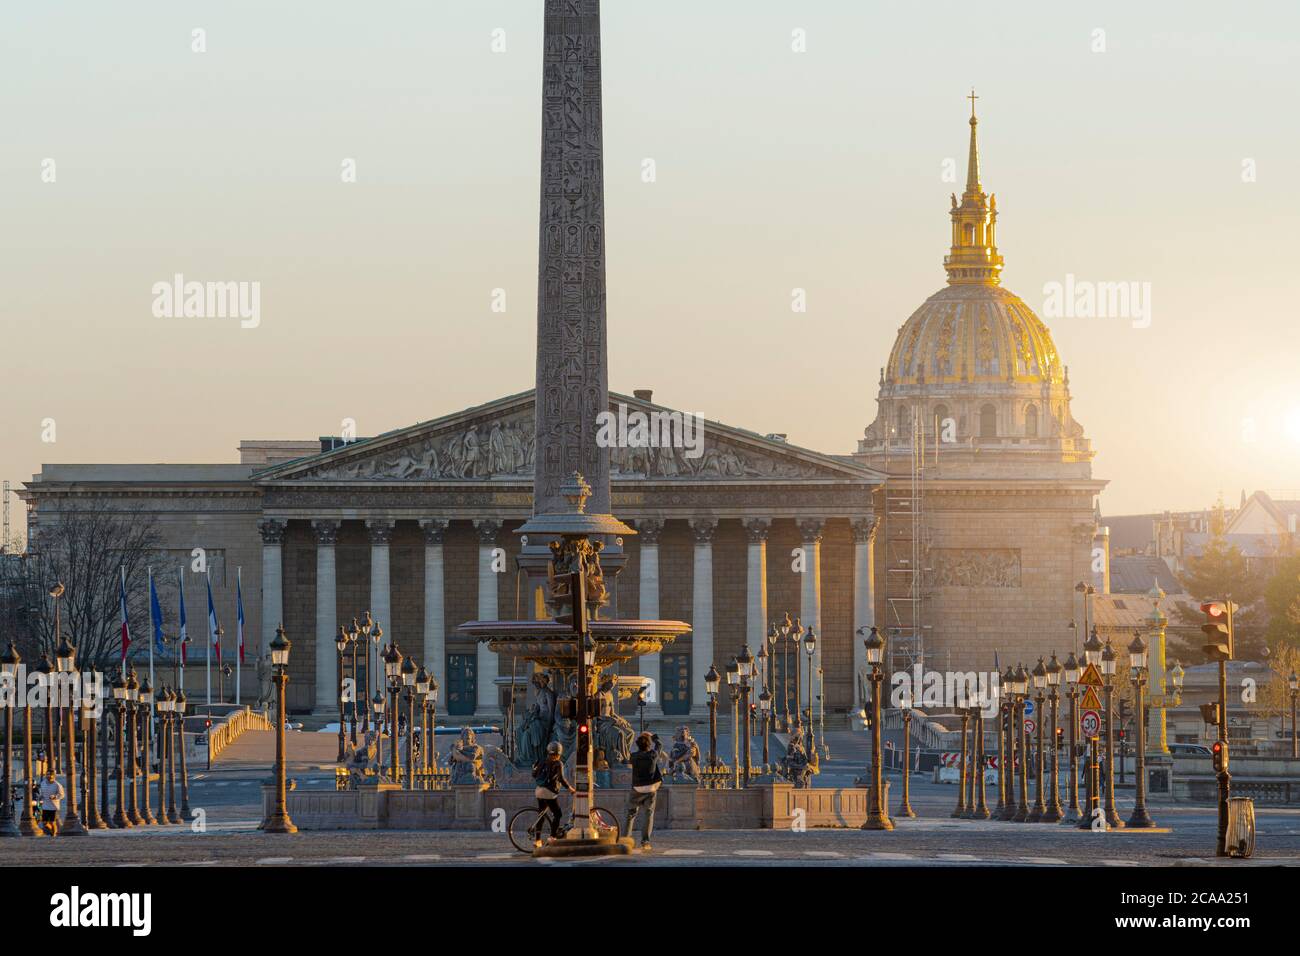 Paris, View of Place de la Concorde Stock Photo